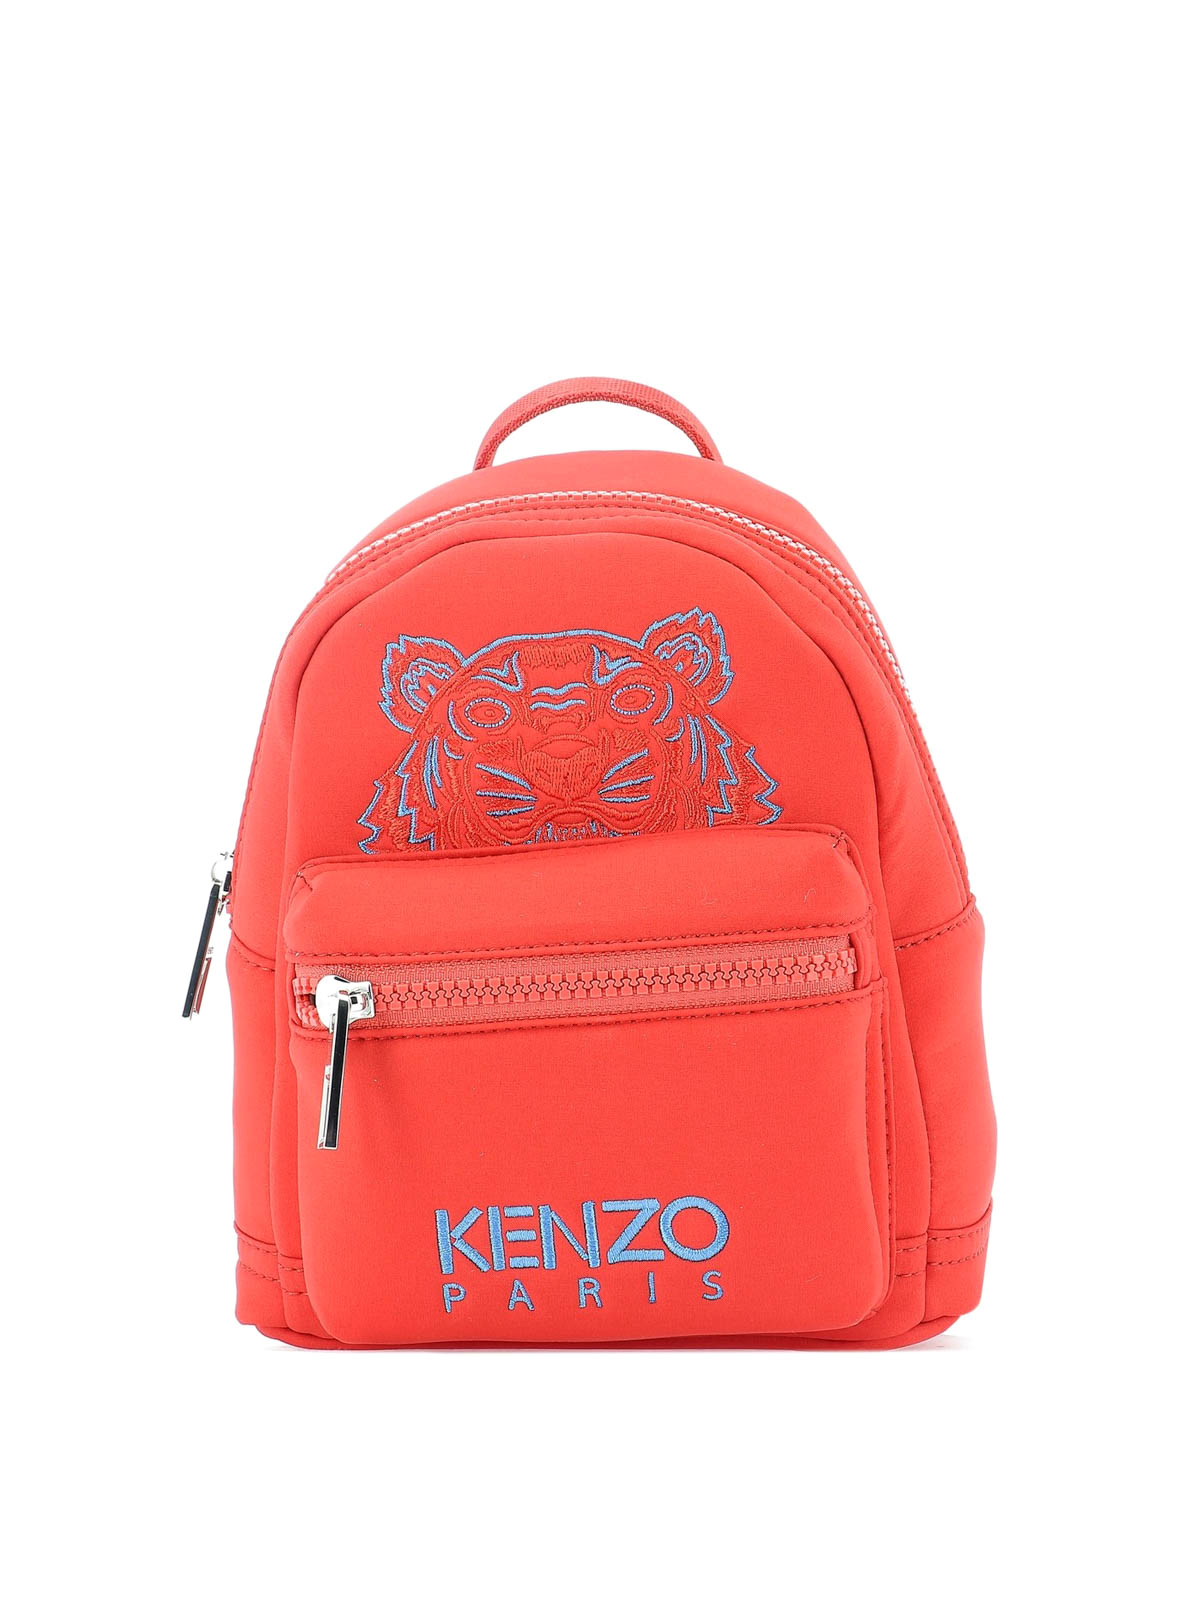 Backpacks Kenzo - Tiger Mini red neoprene backpack - F765SF301F2121